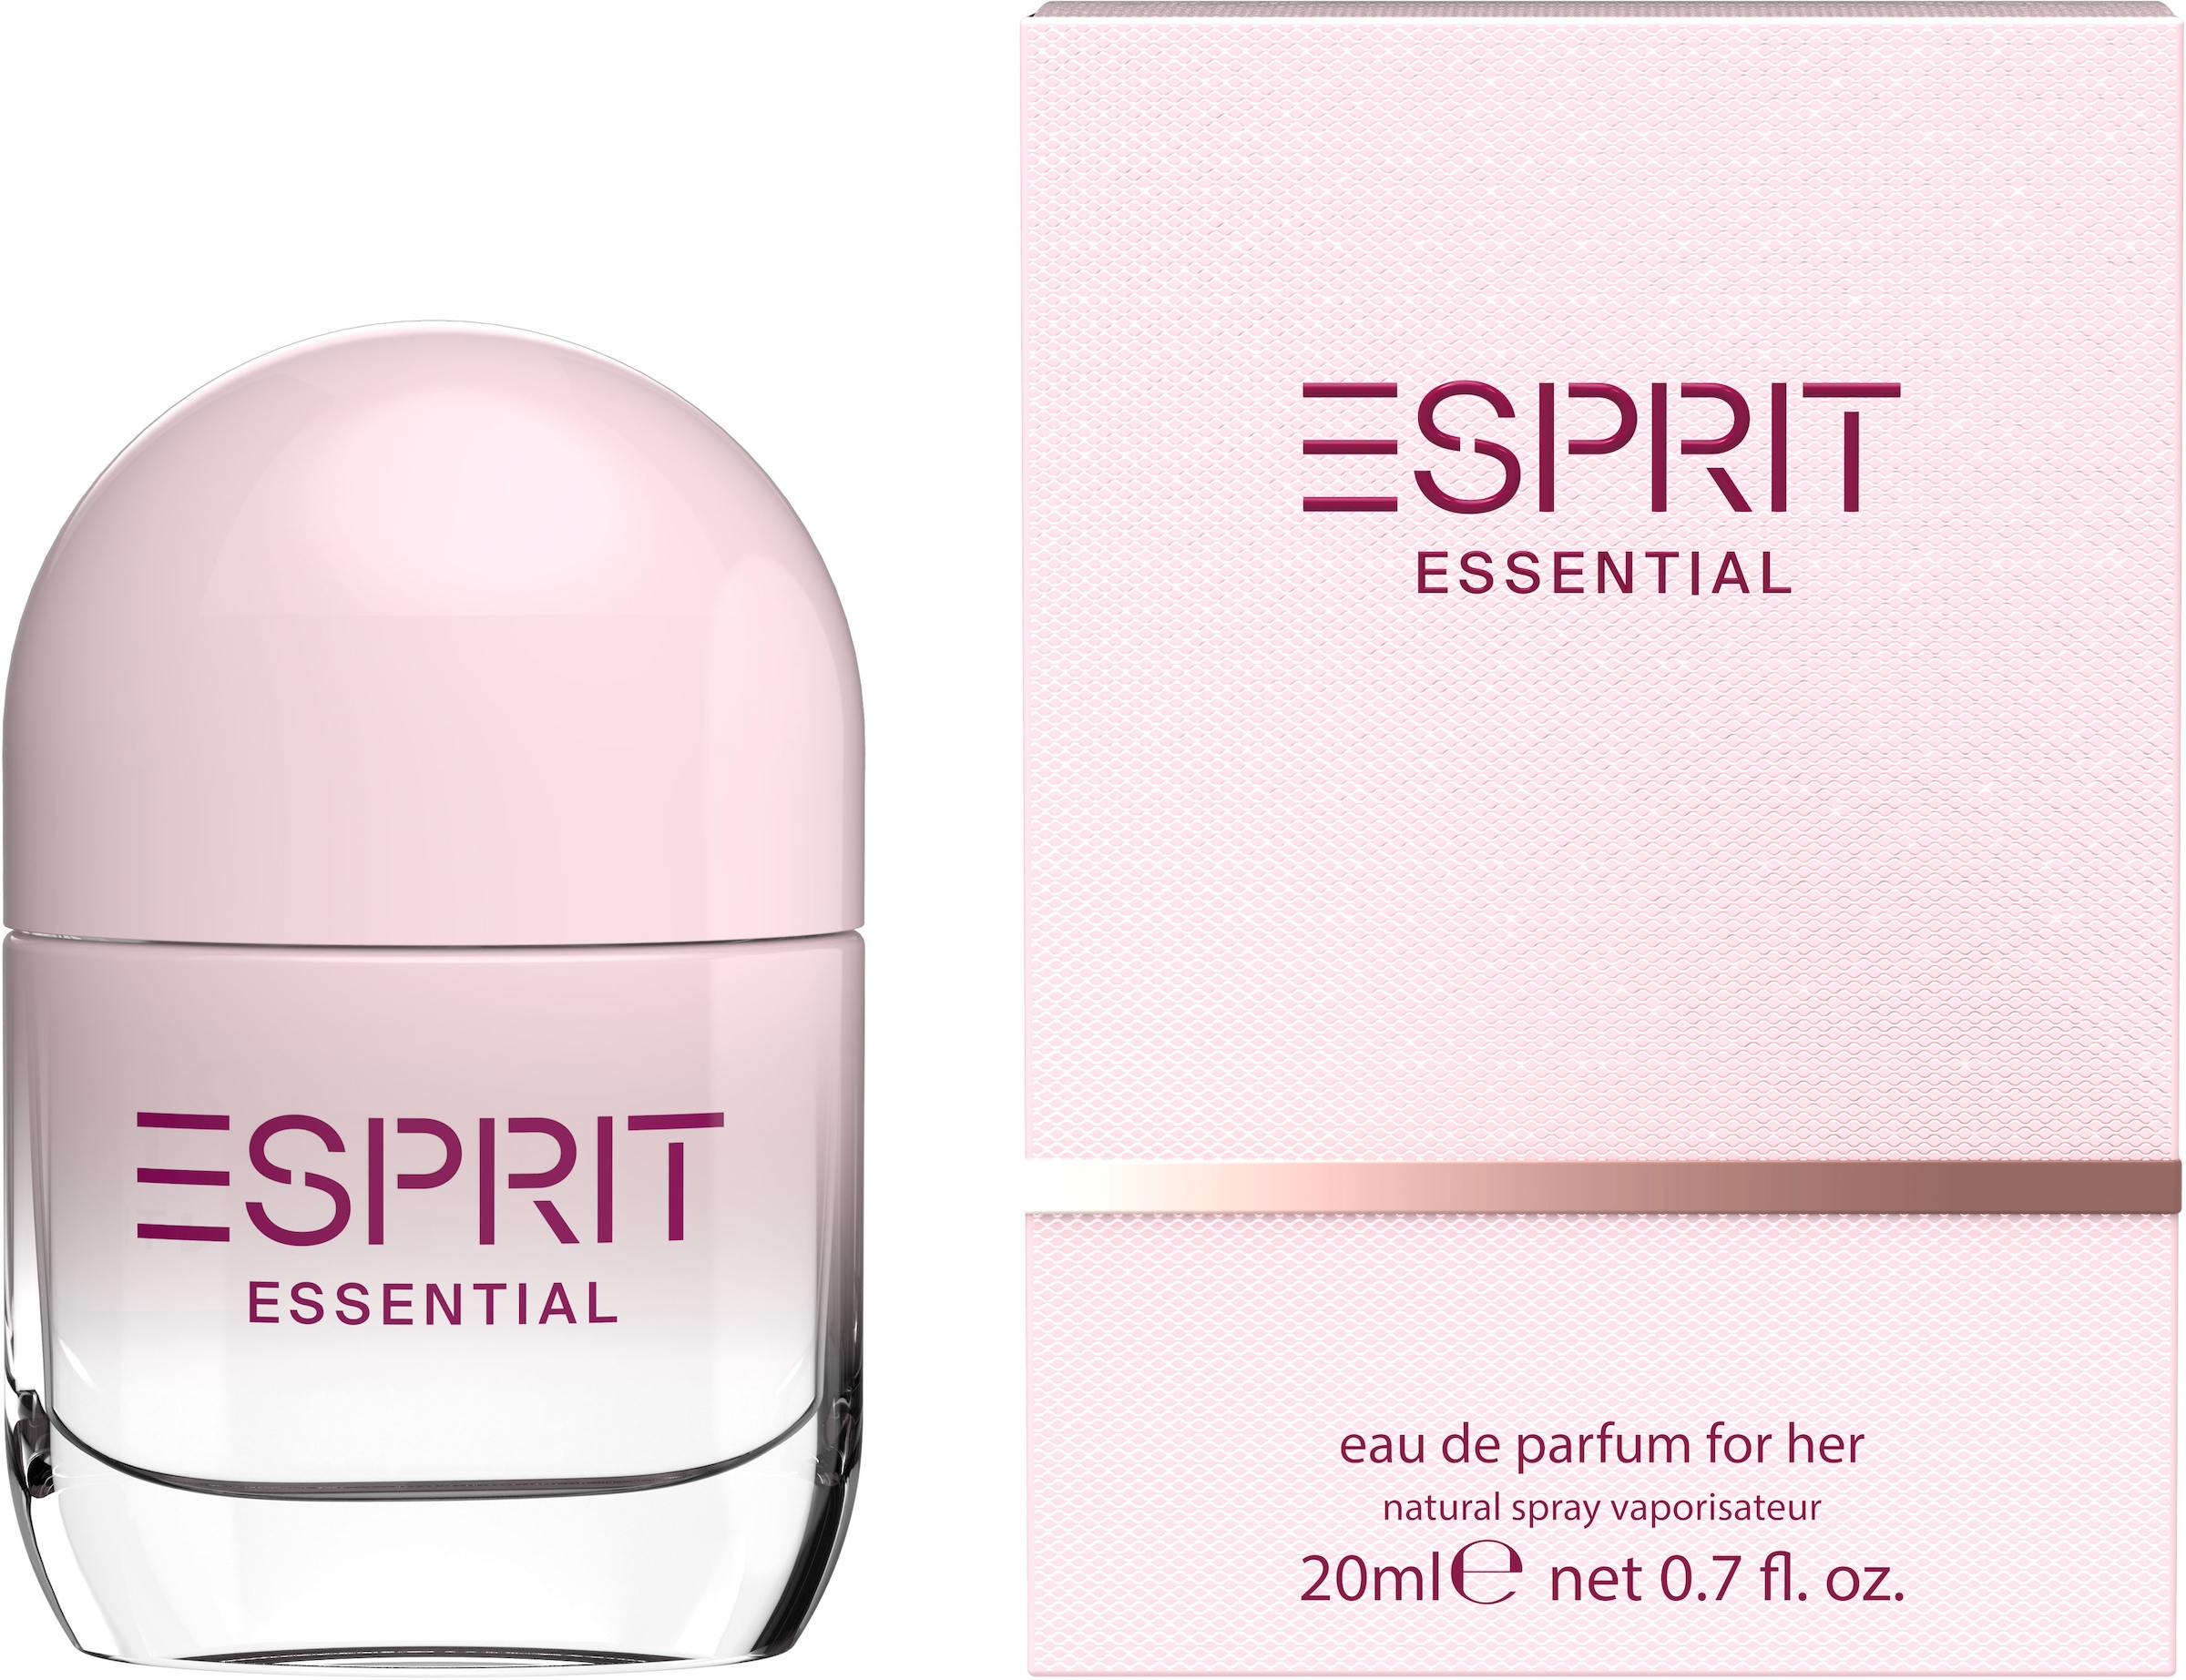 Esprit Eau de Parfum »Essential for günstig her« kaufen